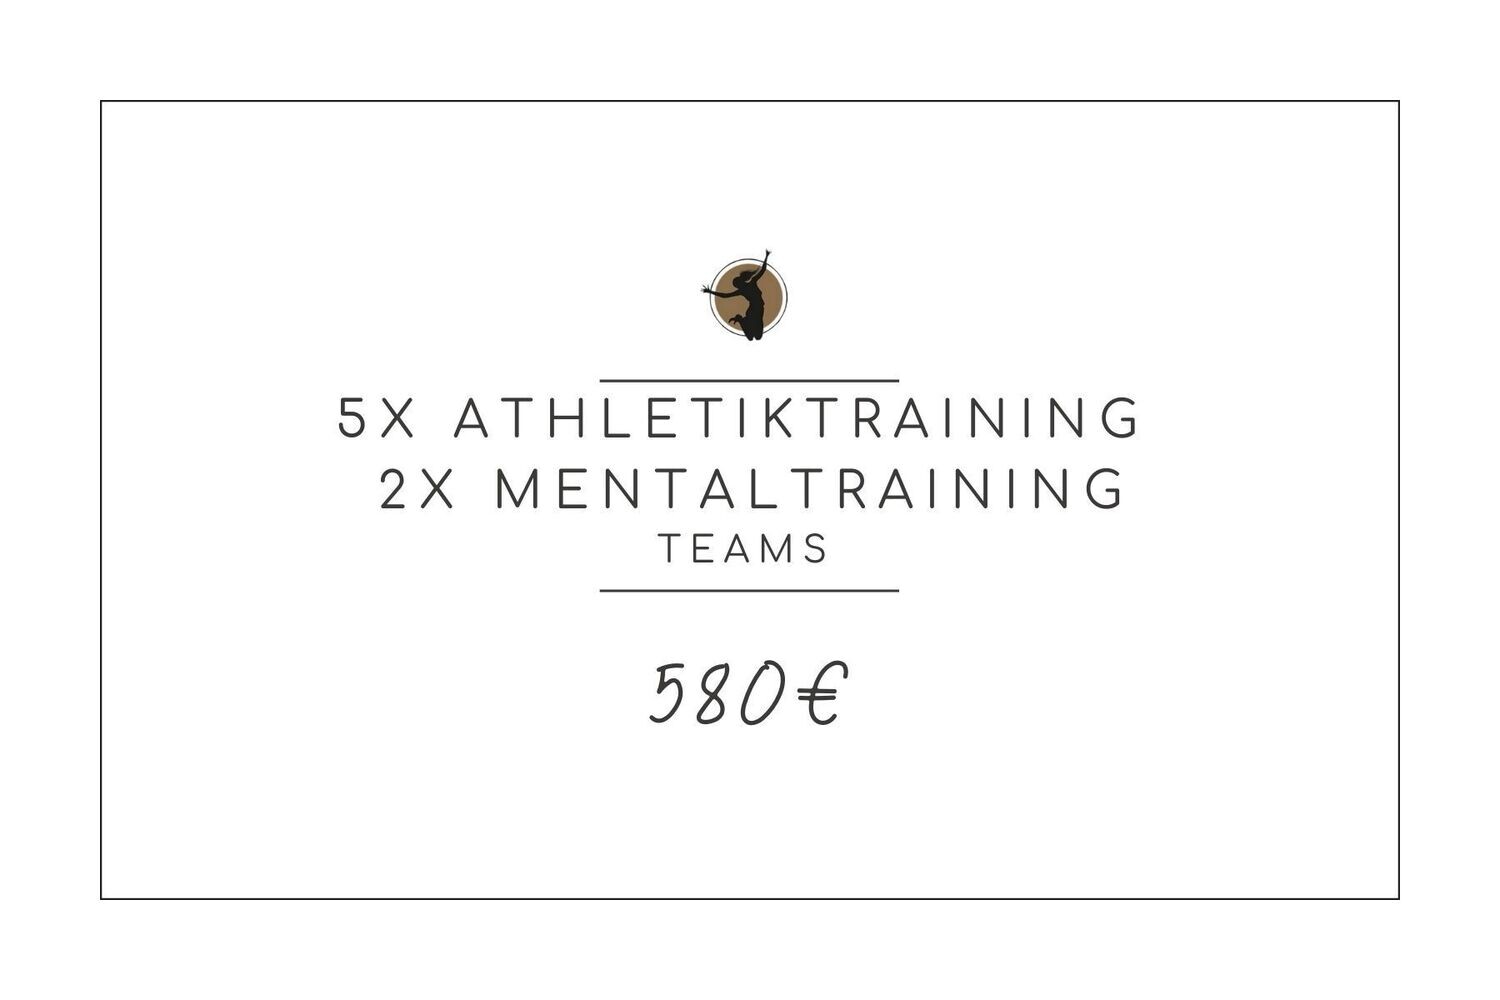 5x Athletiktraining + 2x Mentaltraining (Teams)